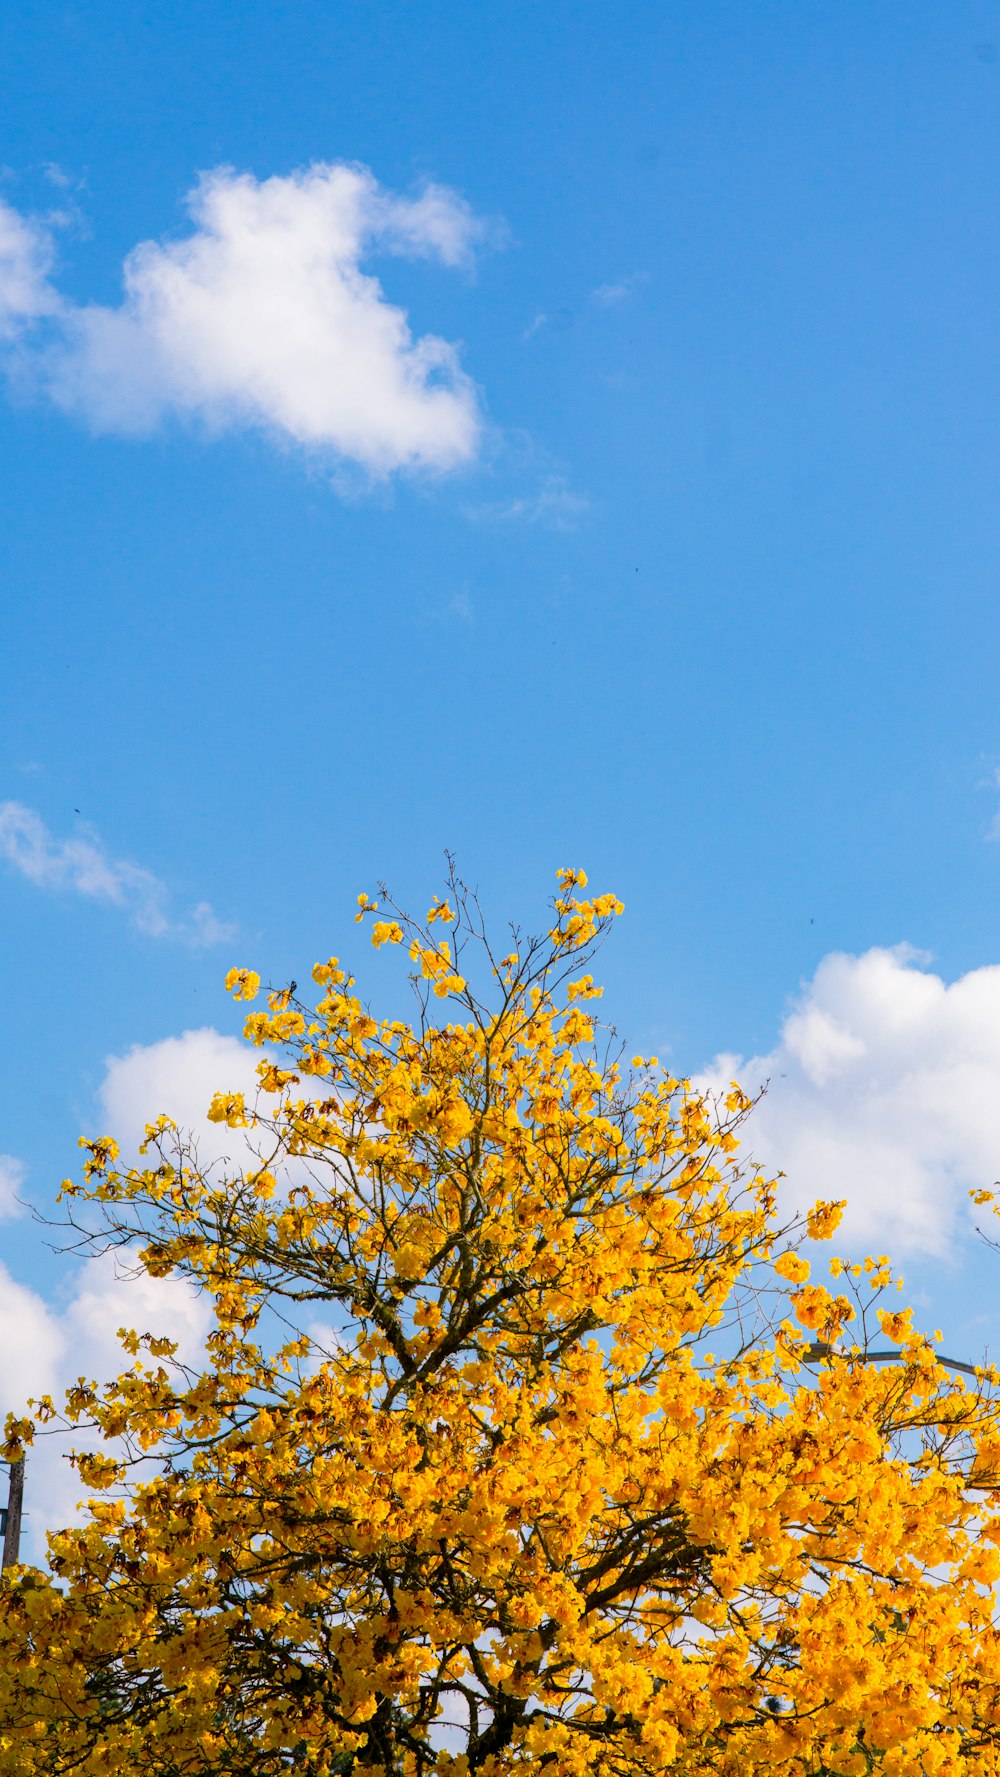 albero a foglia gialla sotto il cielo blu durante il giorno